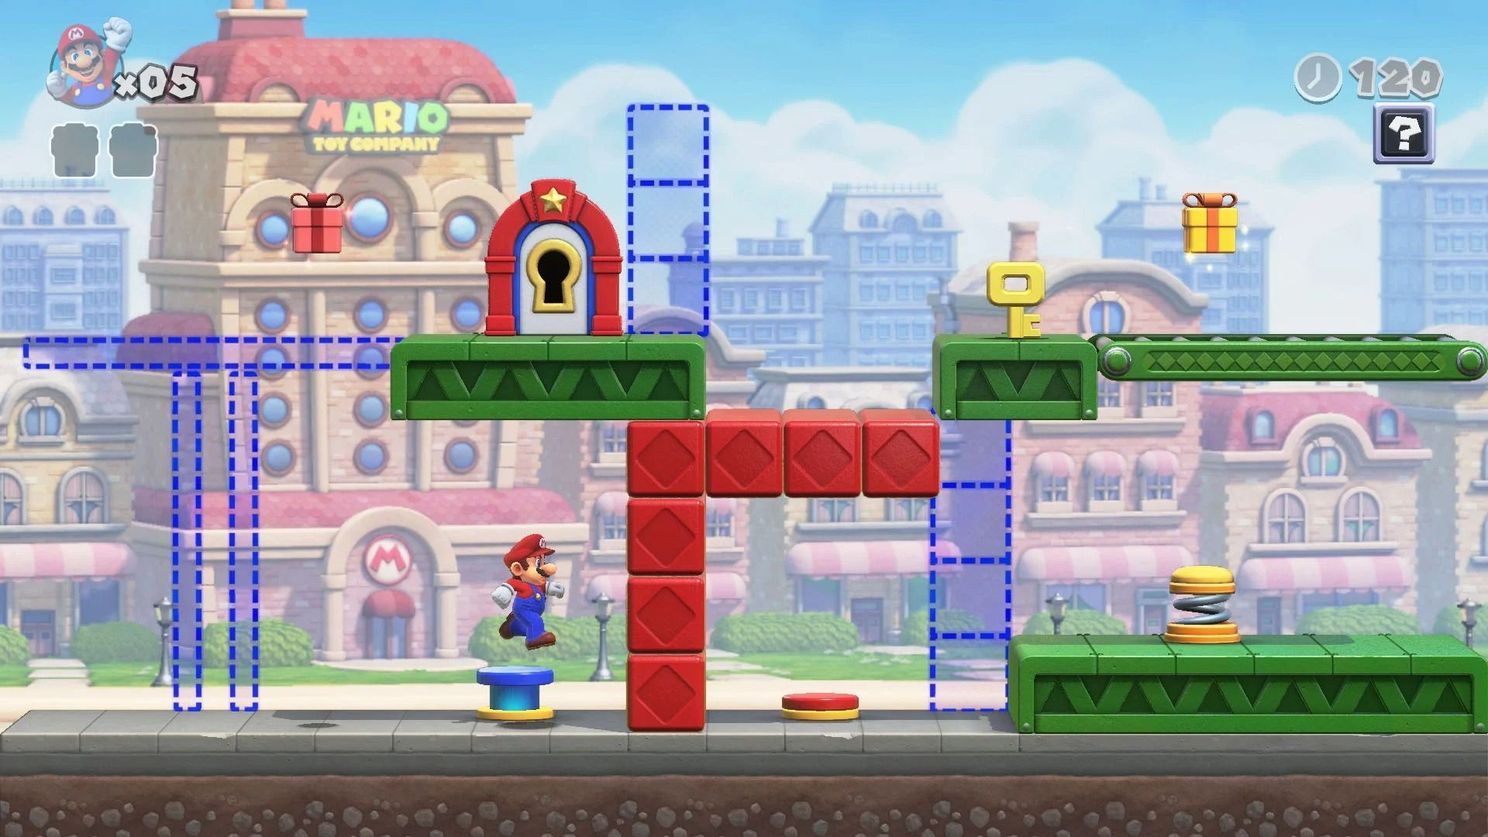 Review: Mario vs. Donkey Kong – Goede remake van een favoriete Gameboy Advance-game